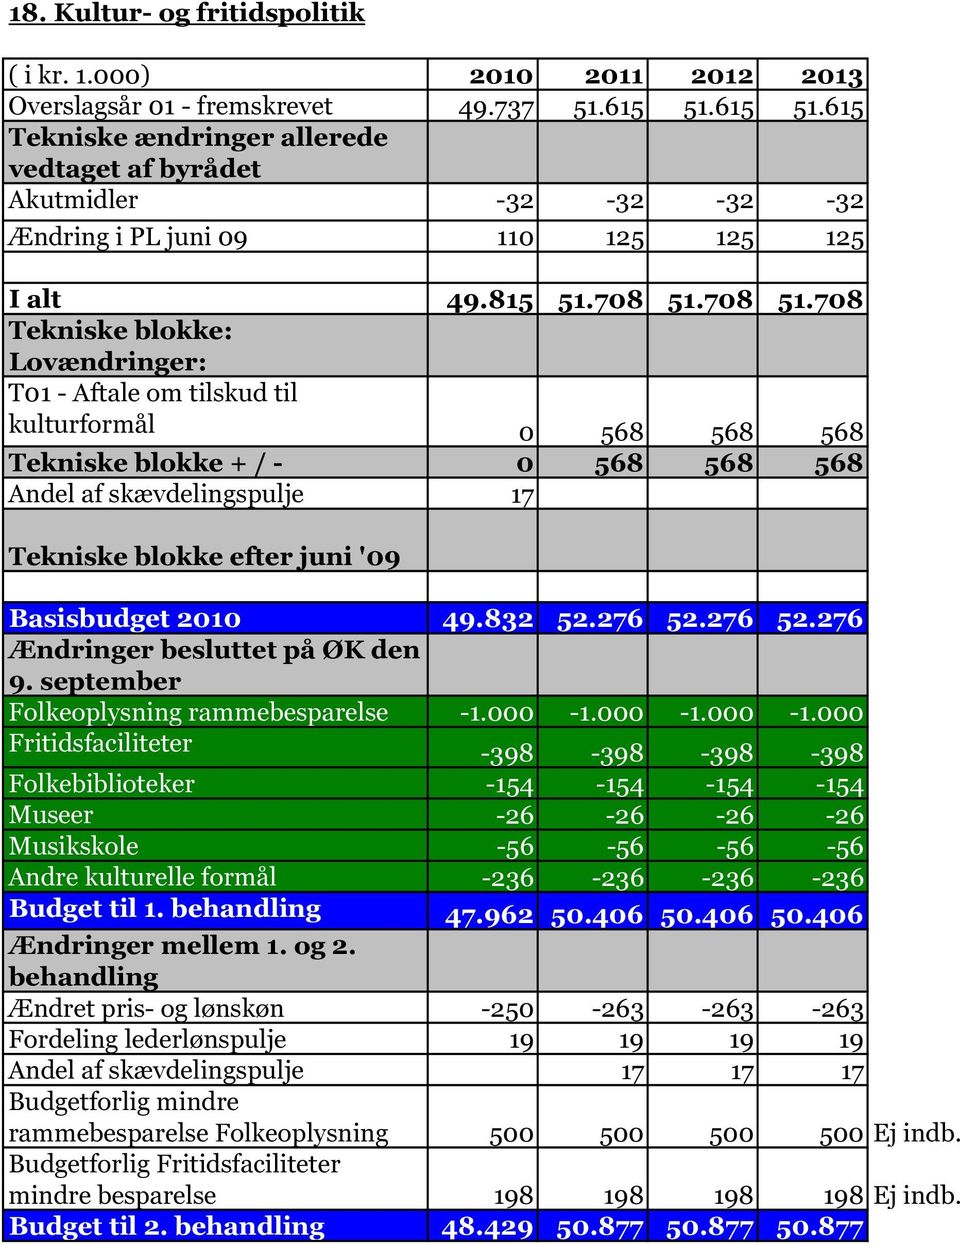 276 52.276 Ændringer besluttet på ØK den 9. september Folkeoplysning rammebesparelse -1.000-1.